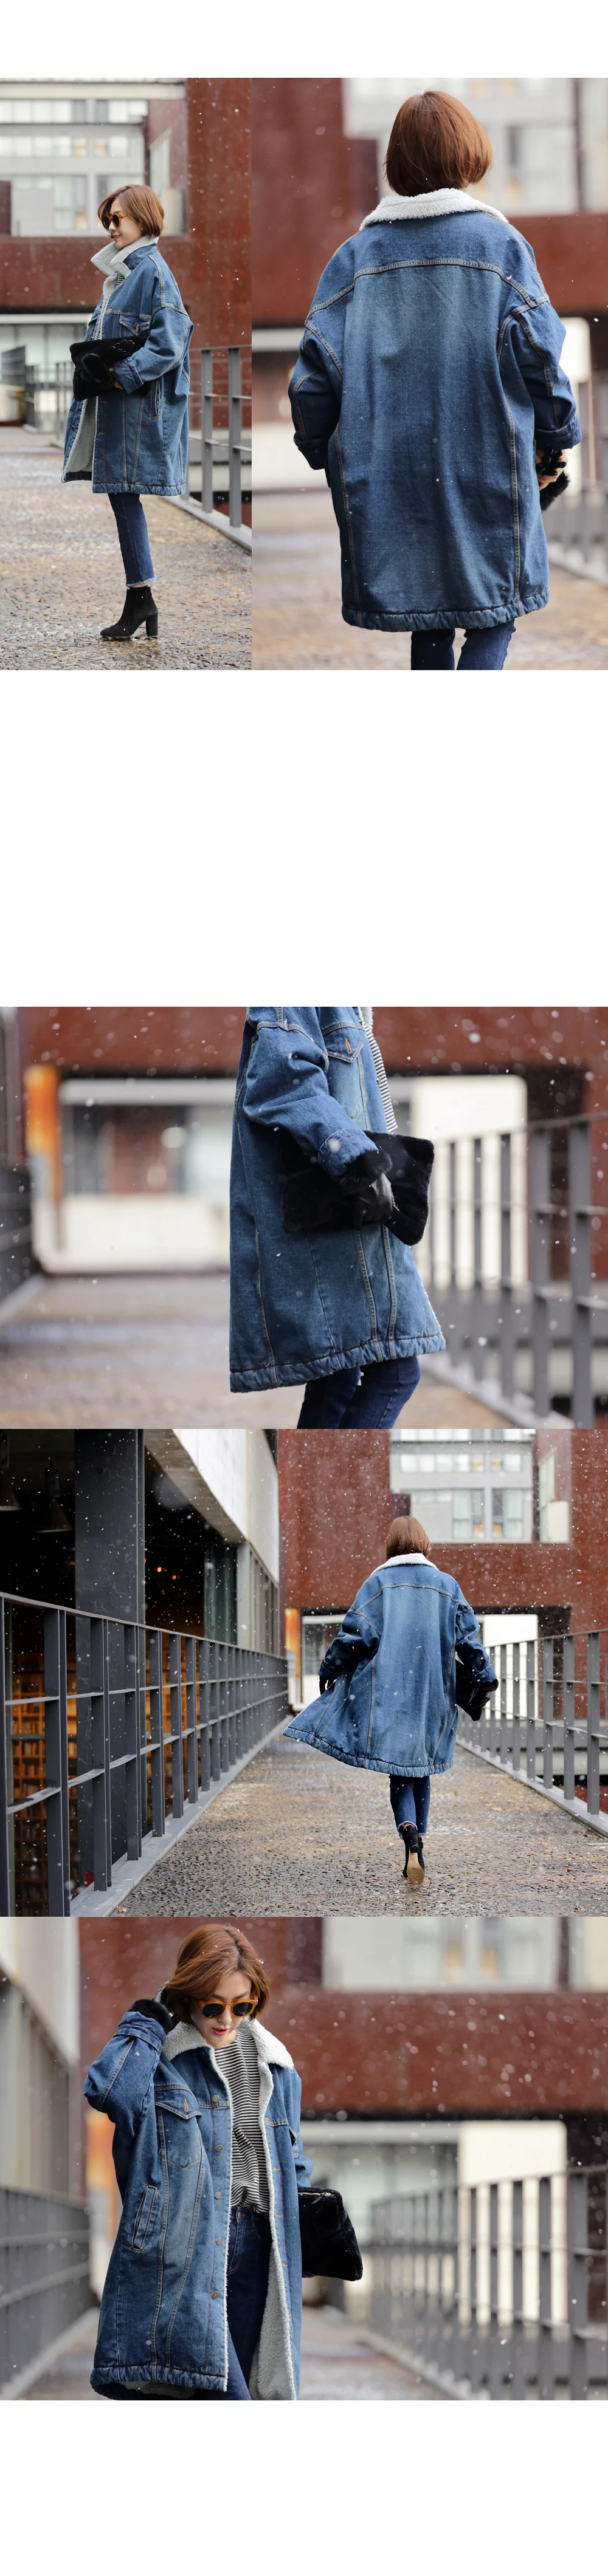 Vangull меховая теплая зимняя джинсовая куртка для женщин Новая мода осенние шерстяные джинсы с подкладкой пальто для женщин куртка-бомбер Casaco Feminino